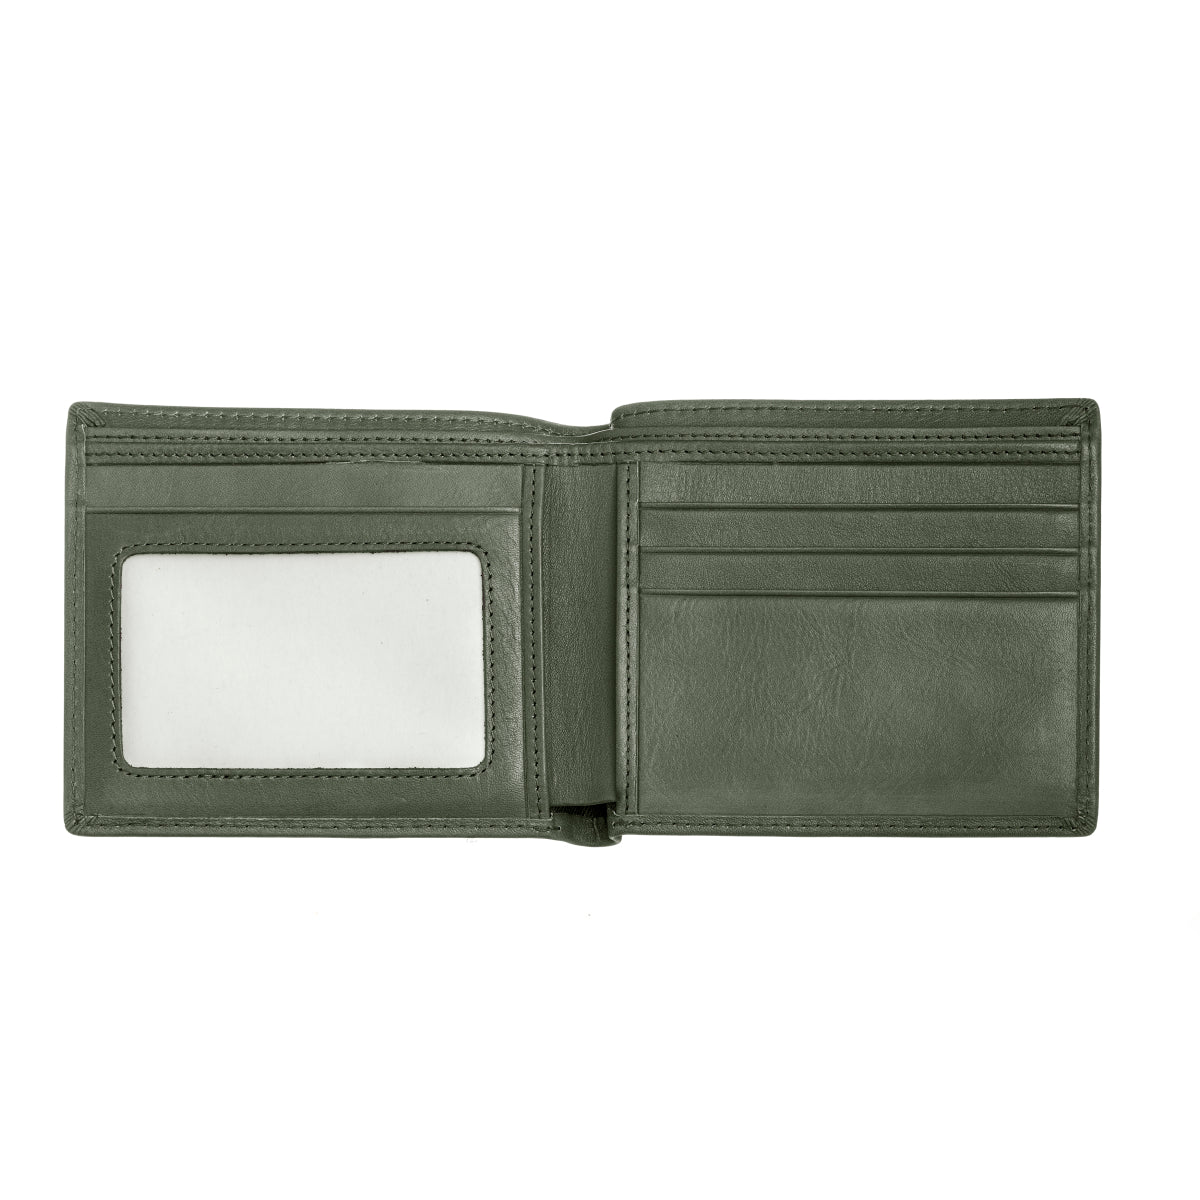 Breed Locke Genuine Leather Bi-Fold Wallet - Olive - BRDWALL001-GRN